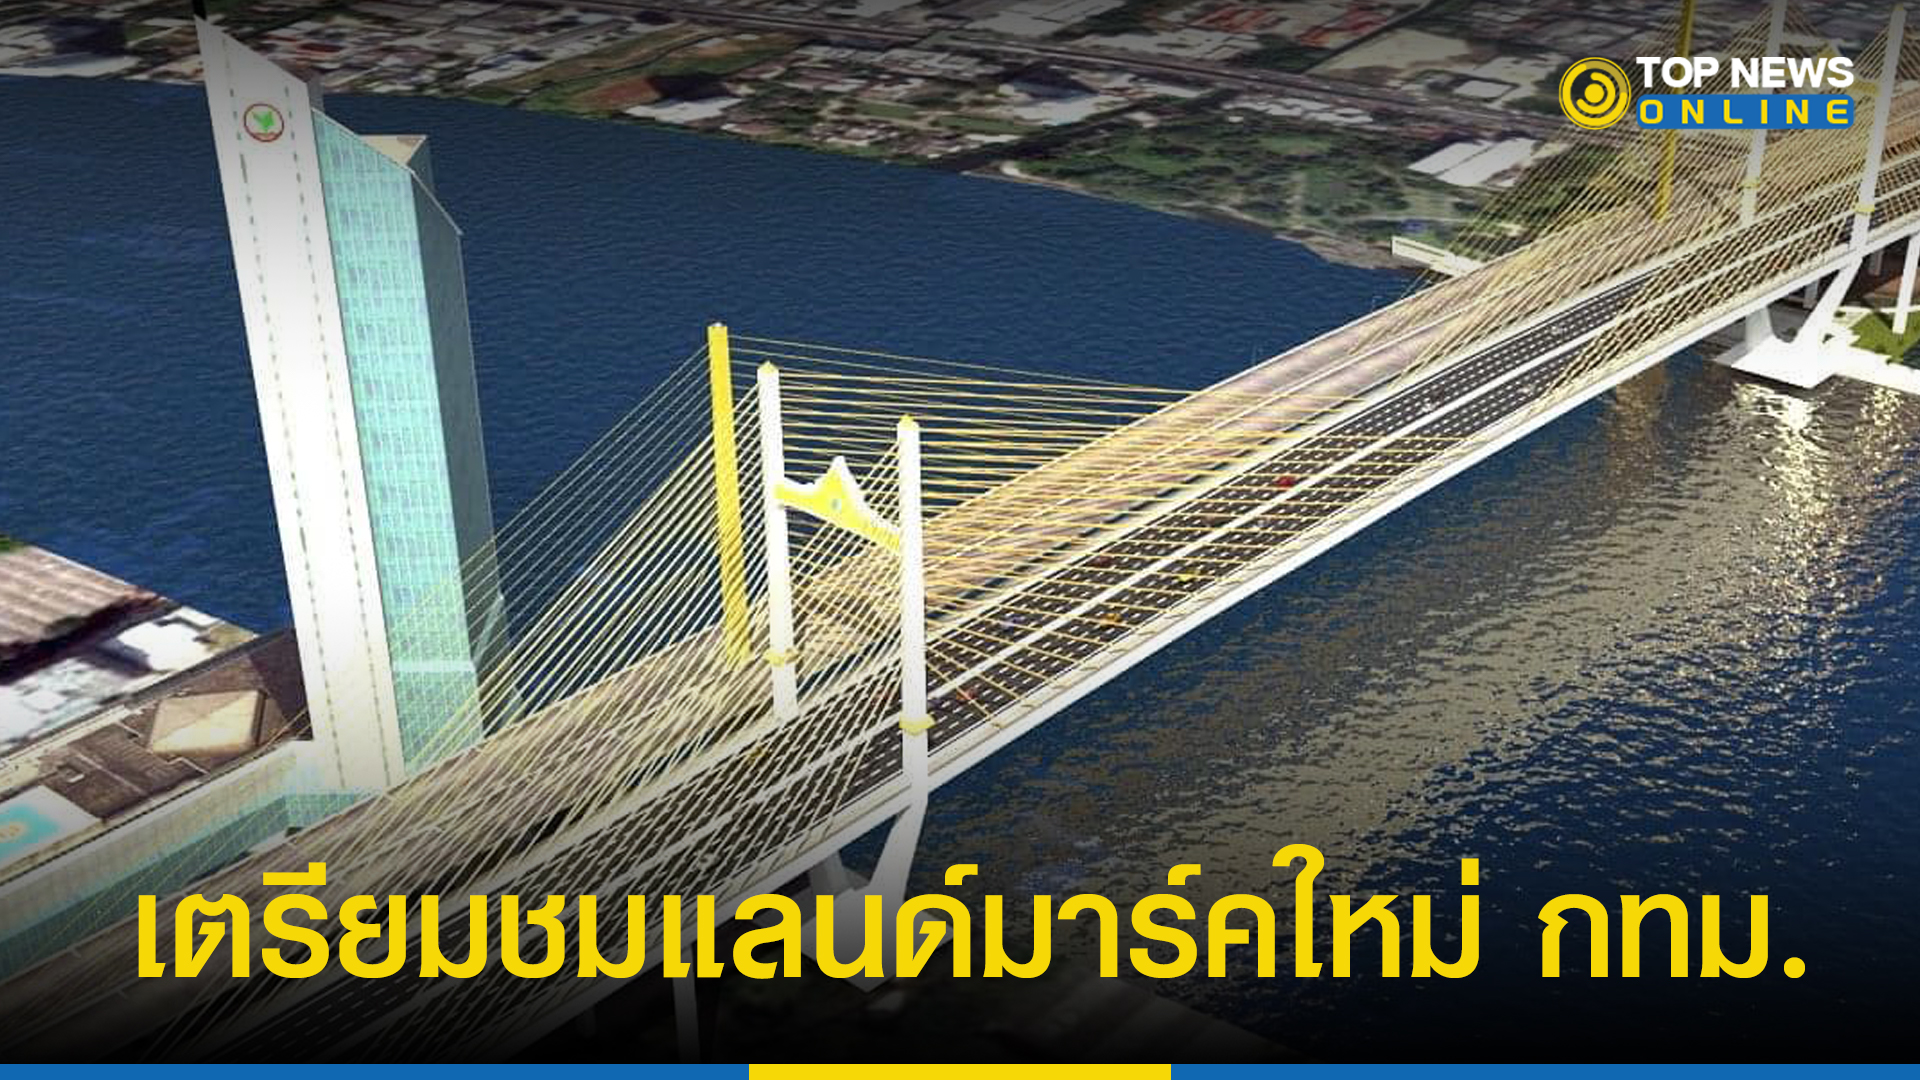 "สะพานพระราม 9" เตรียมเปิดใช้สะพานคู่ขนาน แลนด์มาร์ค กทม.